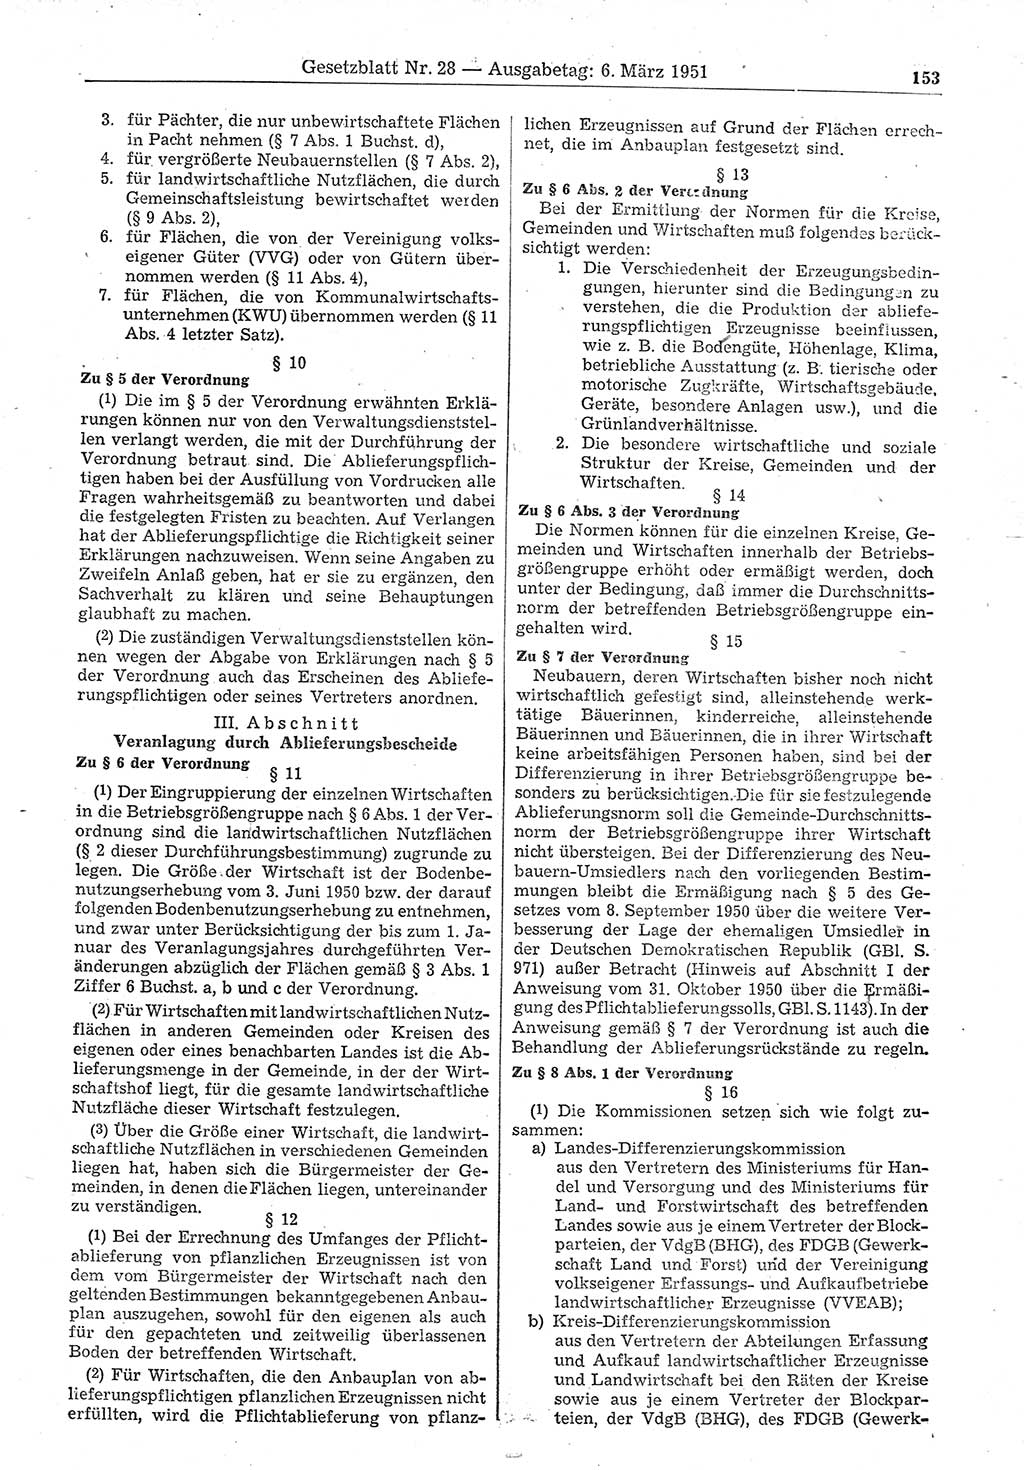 Gesetzblatt (GBl.) der Deutschen Demokratischen Republik (DDR) 1951, Seite 153 (GBl. DDR 1951, S. 153)